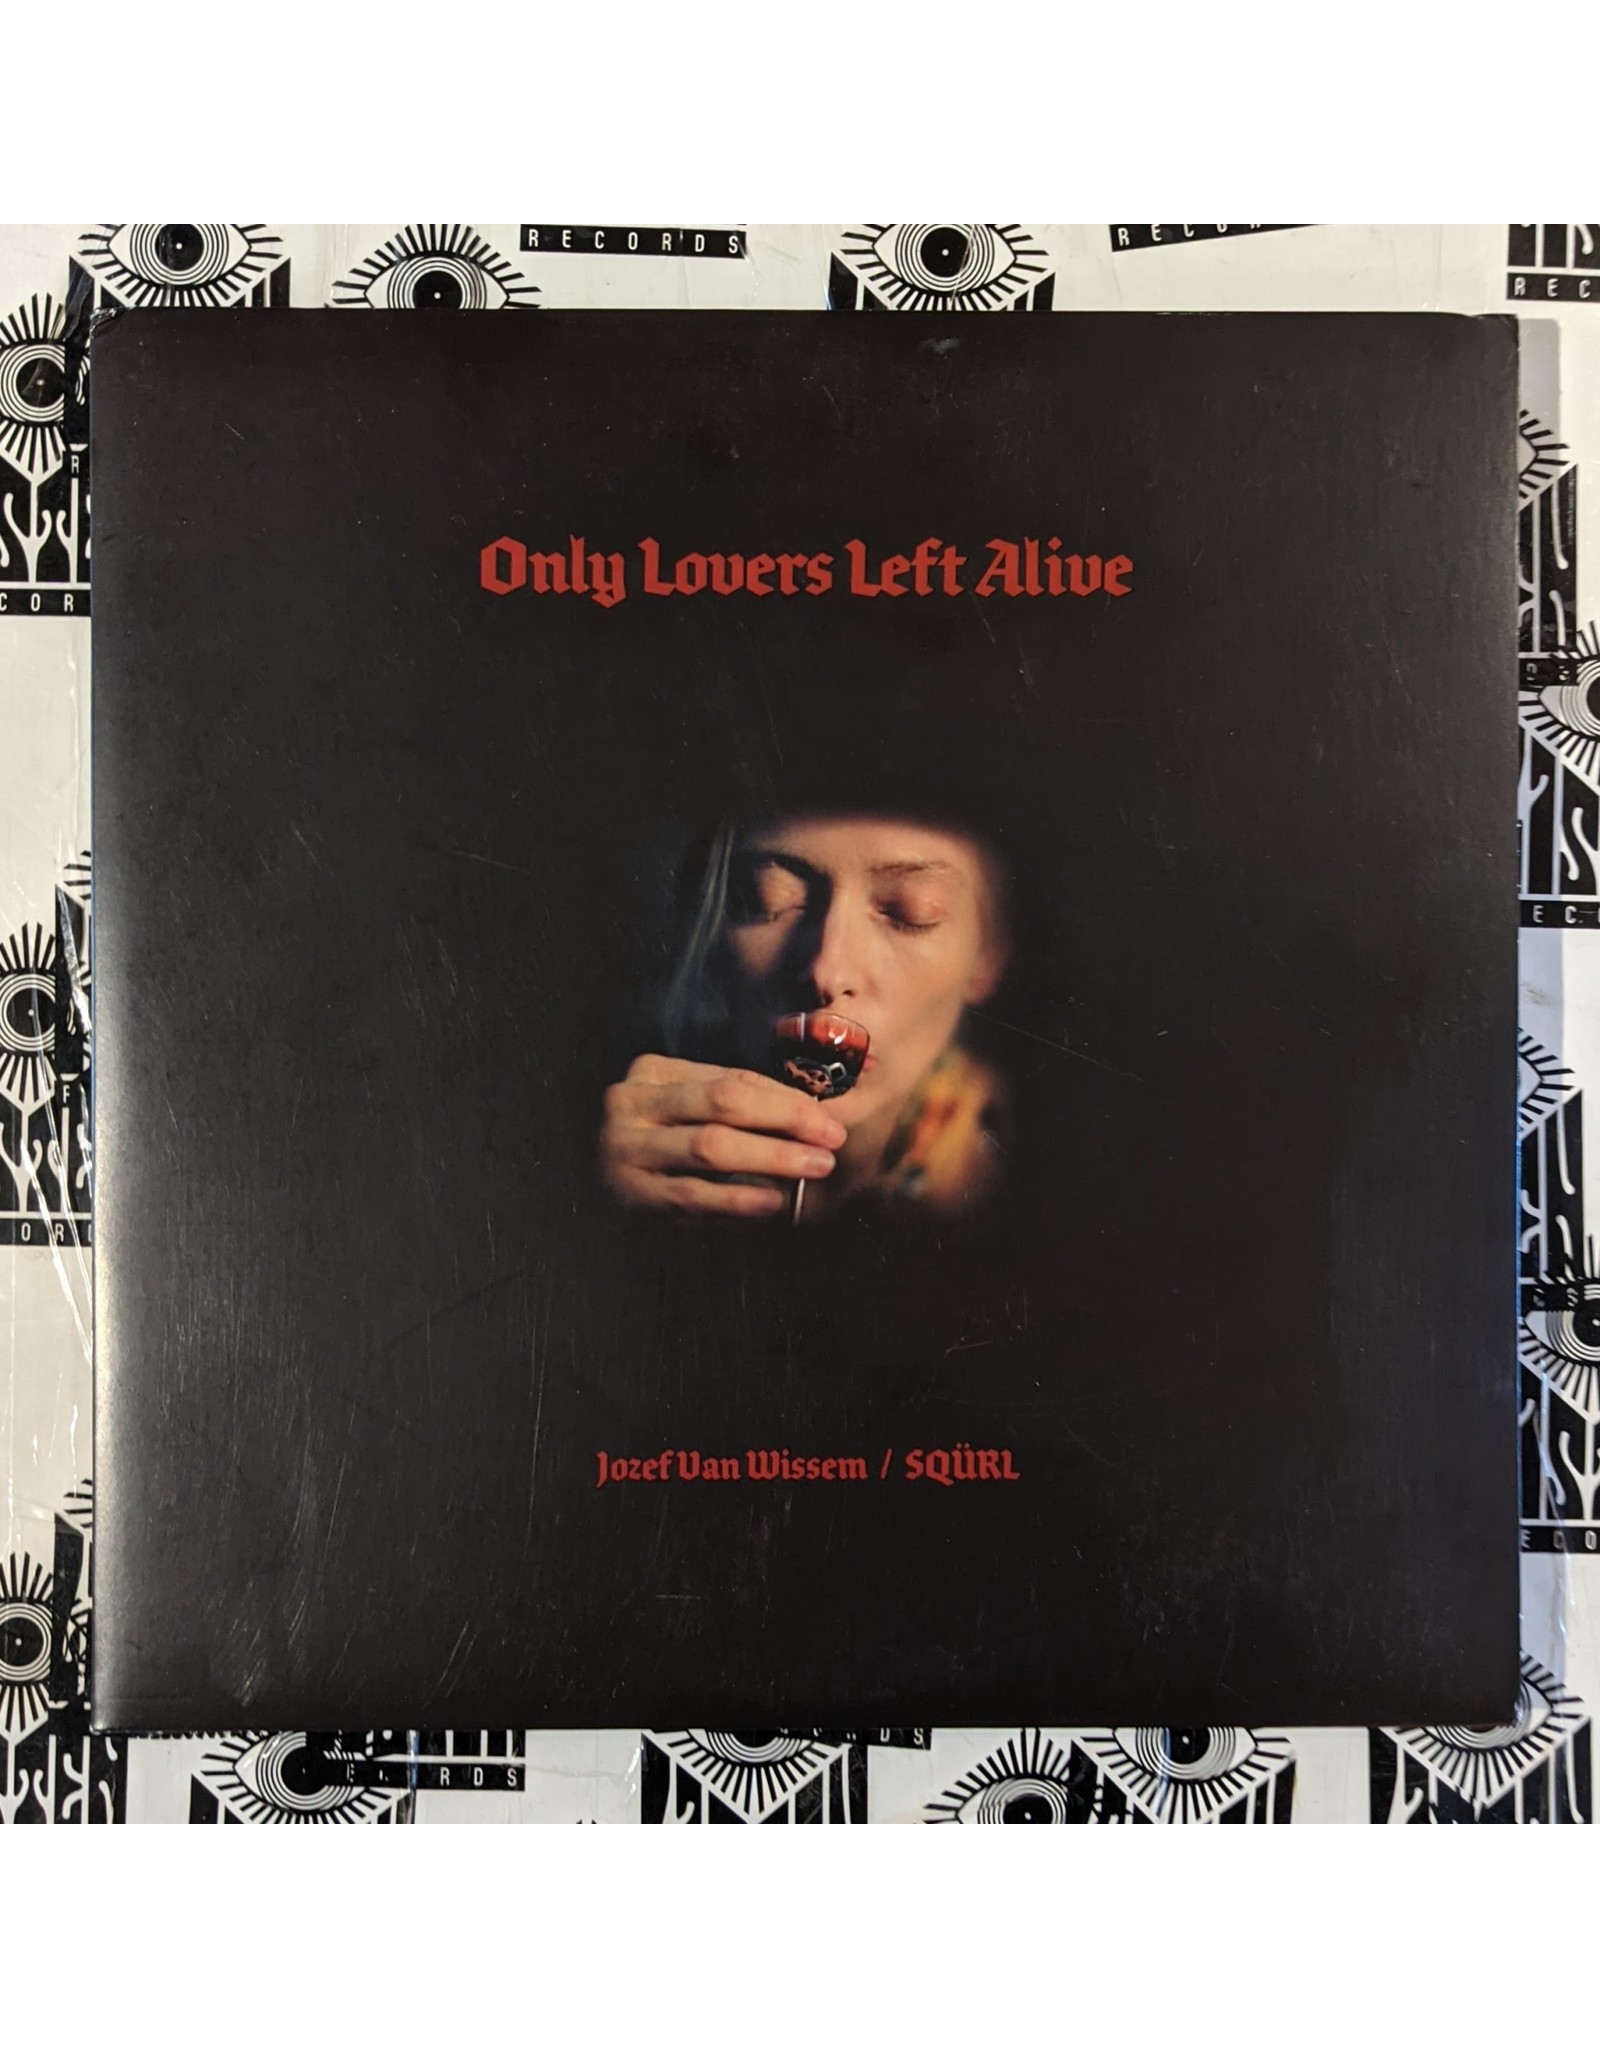 USED: Jozef Van Wissem/SQURL: Only Lovers Left Alive OST LP